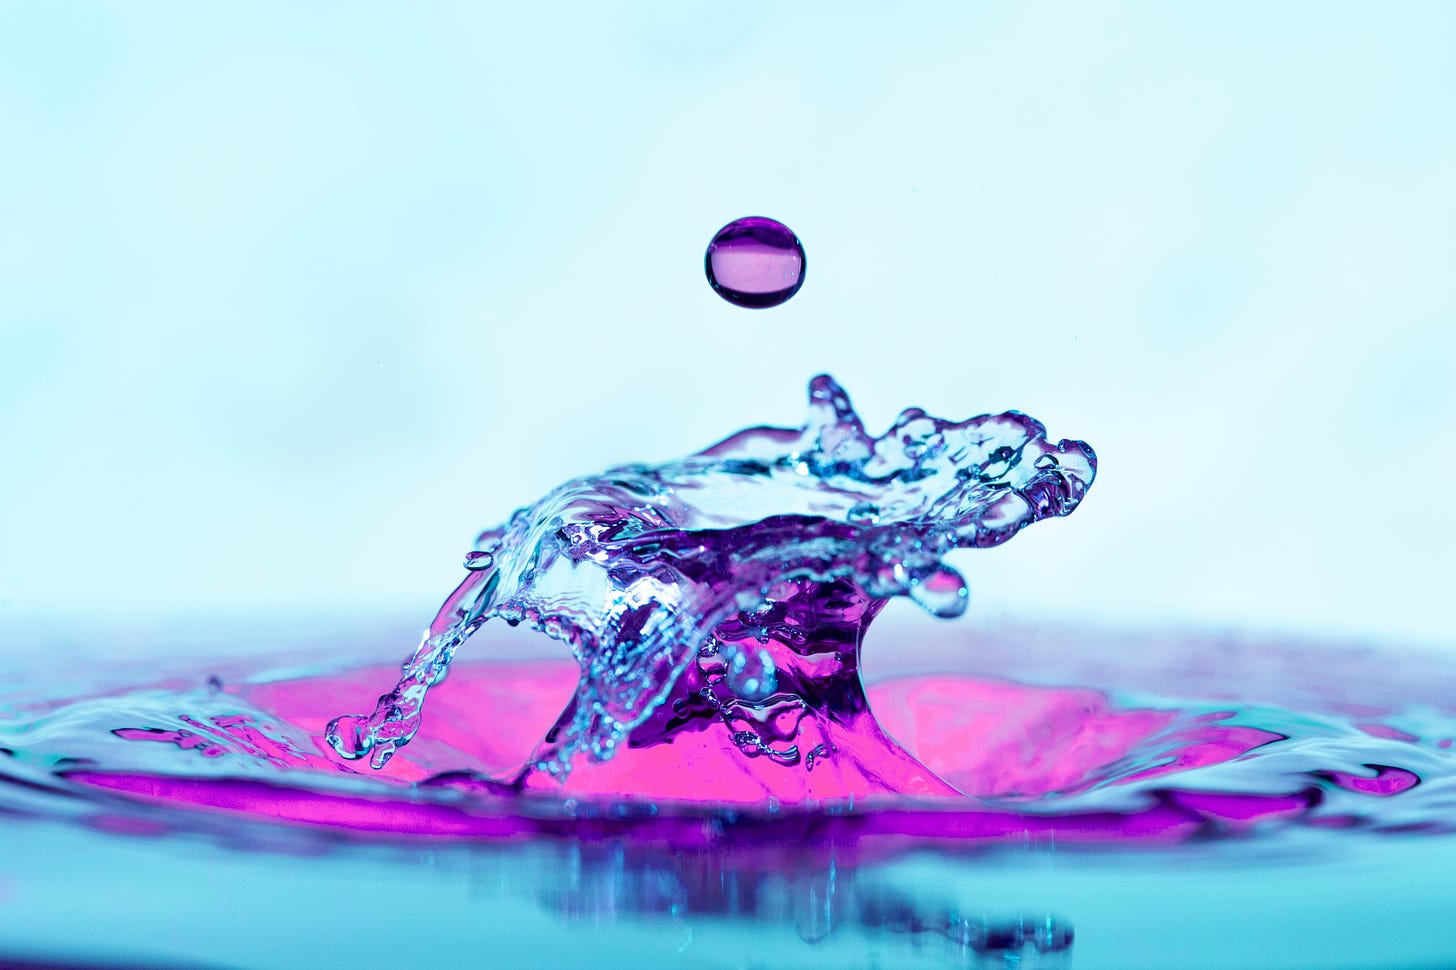 Foto de uma bolinha de gude lilás emergindo da água azul clara